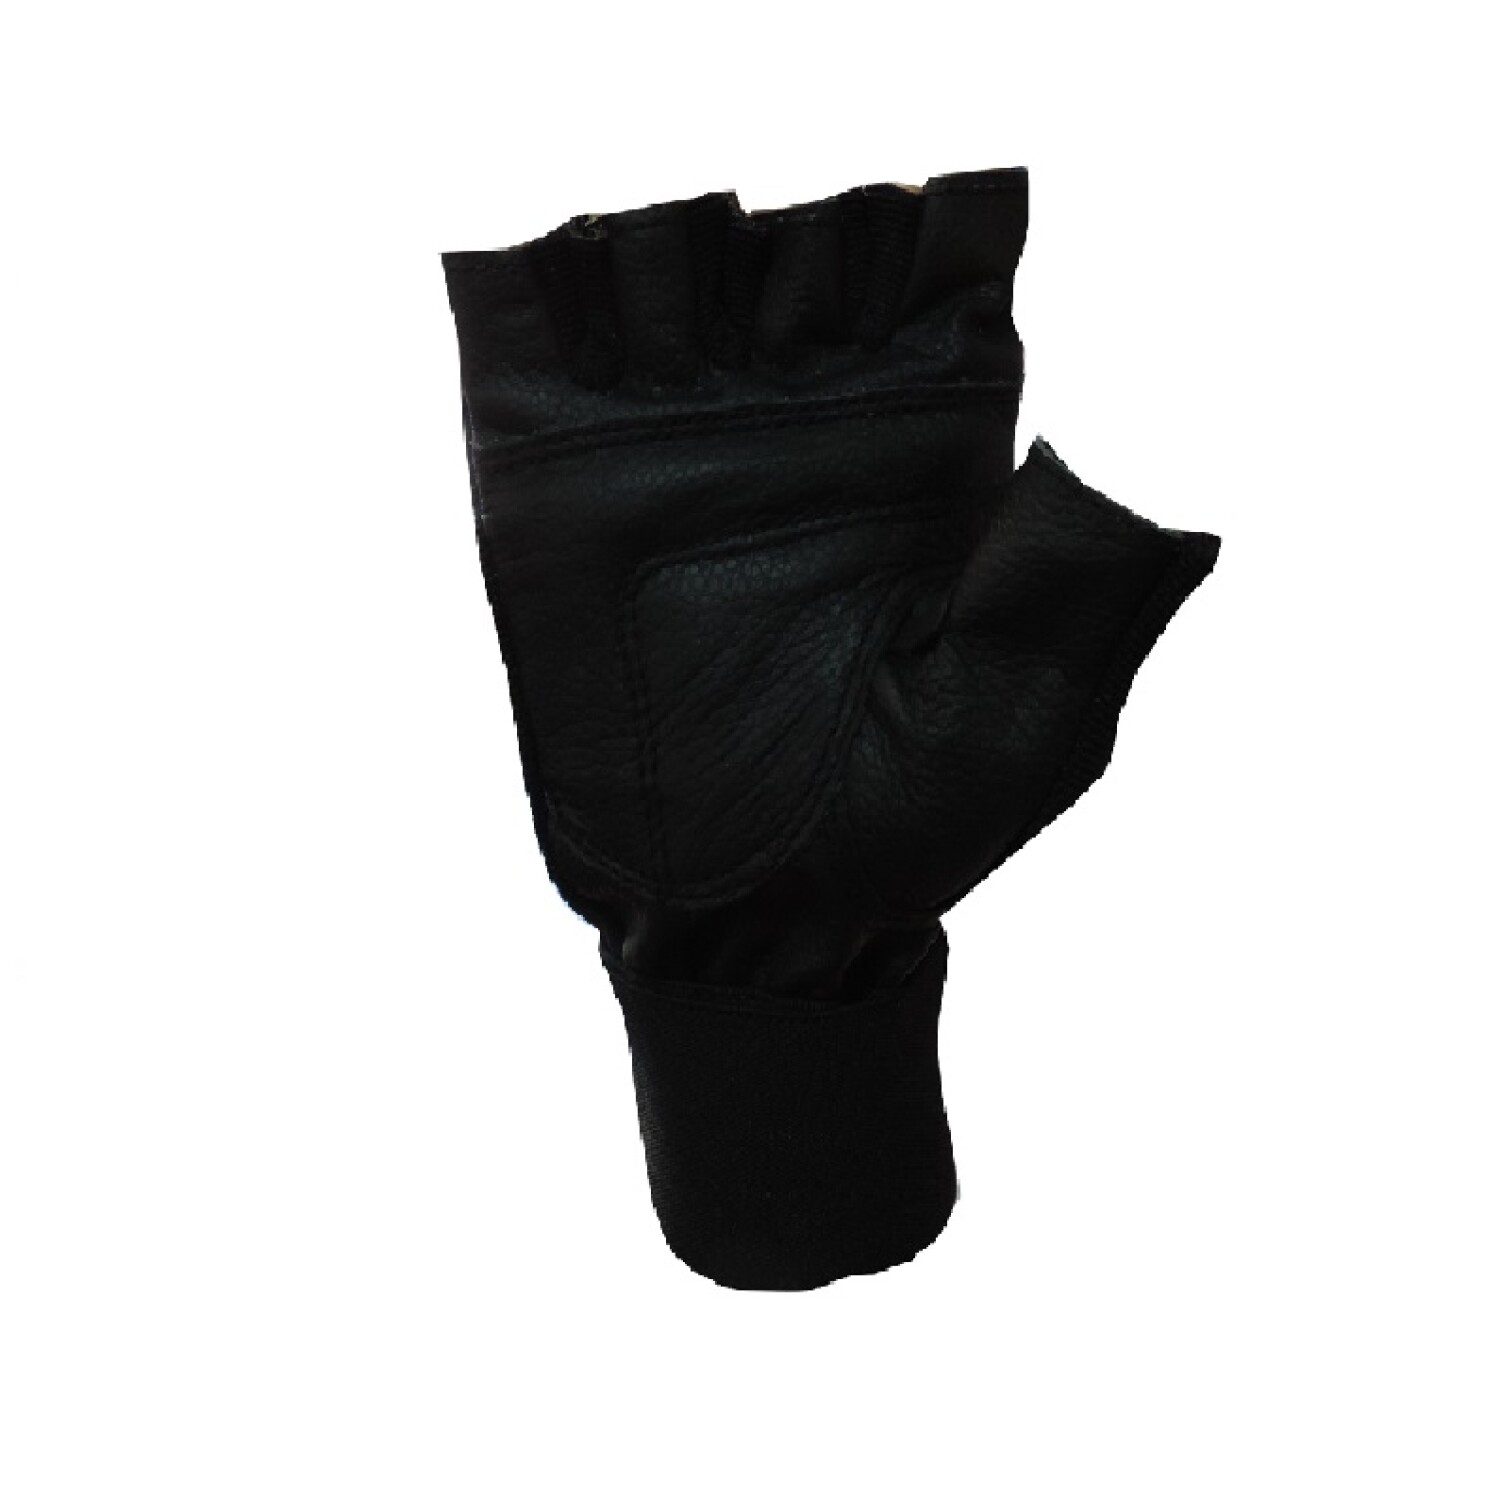 https://f.fcdn.app/imgs/0ff4c2/universobinario.com/ubinuy/6007/original/catalogo/tc272451-negro_2/1500-1500/par-de-guantes-para-pesas-con-munequera-k-negro.jpg